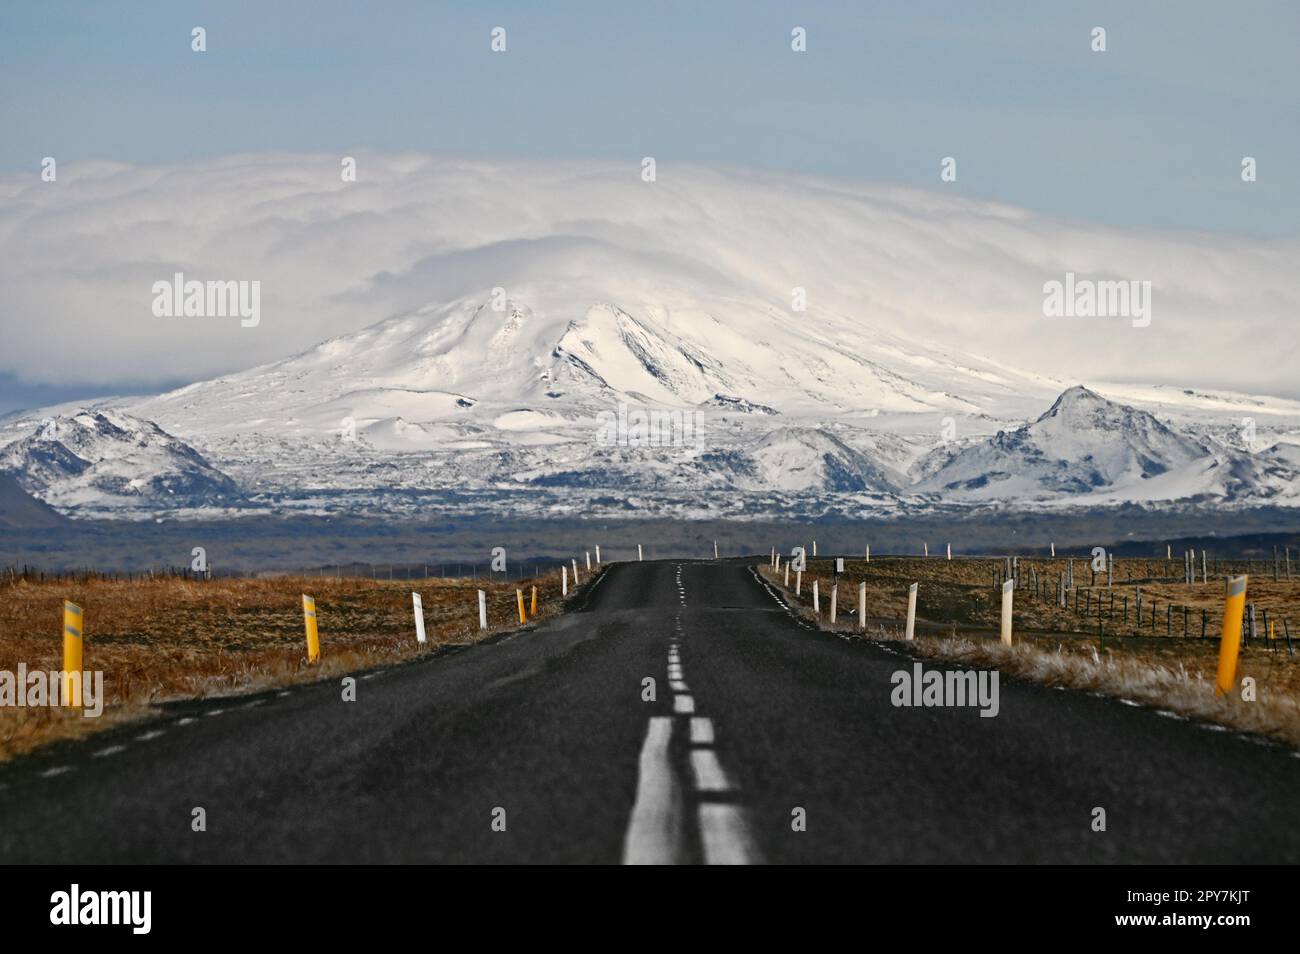 Strasse mit Blick auf schneebedeckte Berge im Süden von Island. Stock Photo